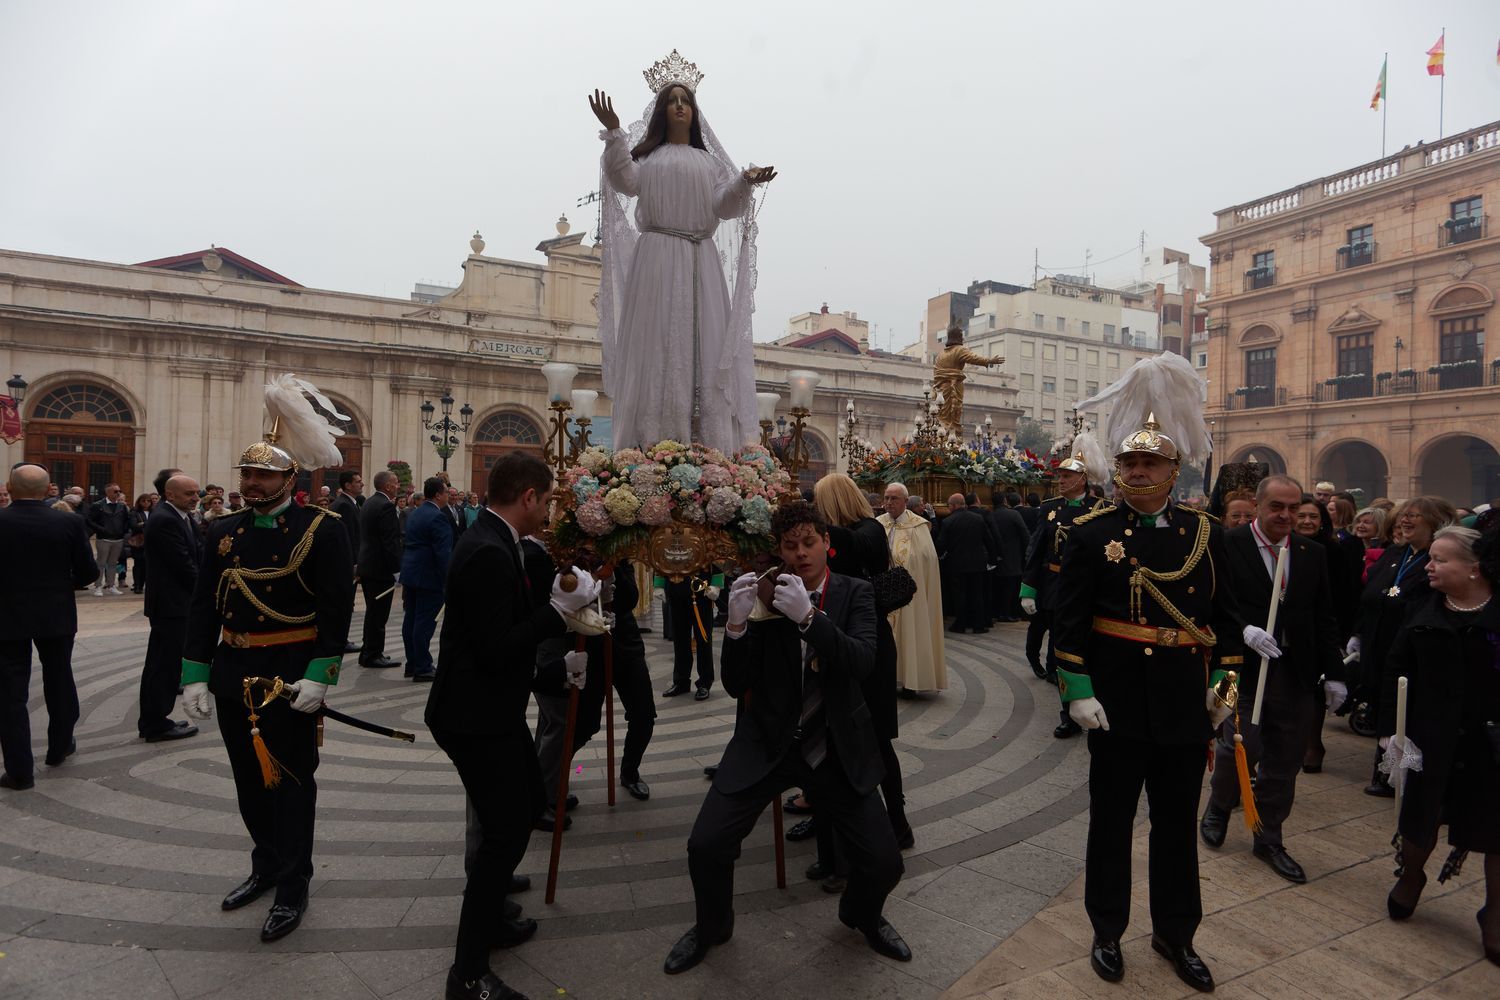 Las imágenes de la procesión del Encuentro en el centro de Castelló